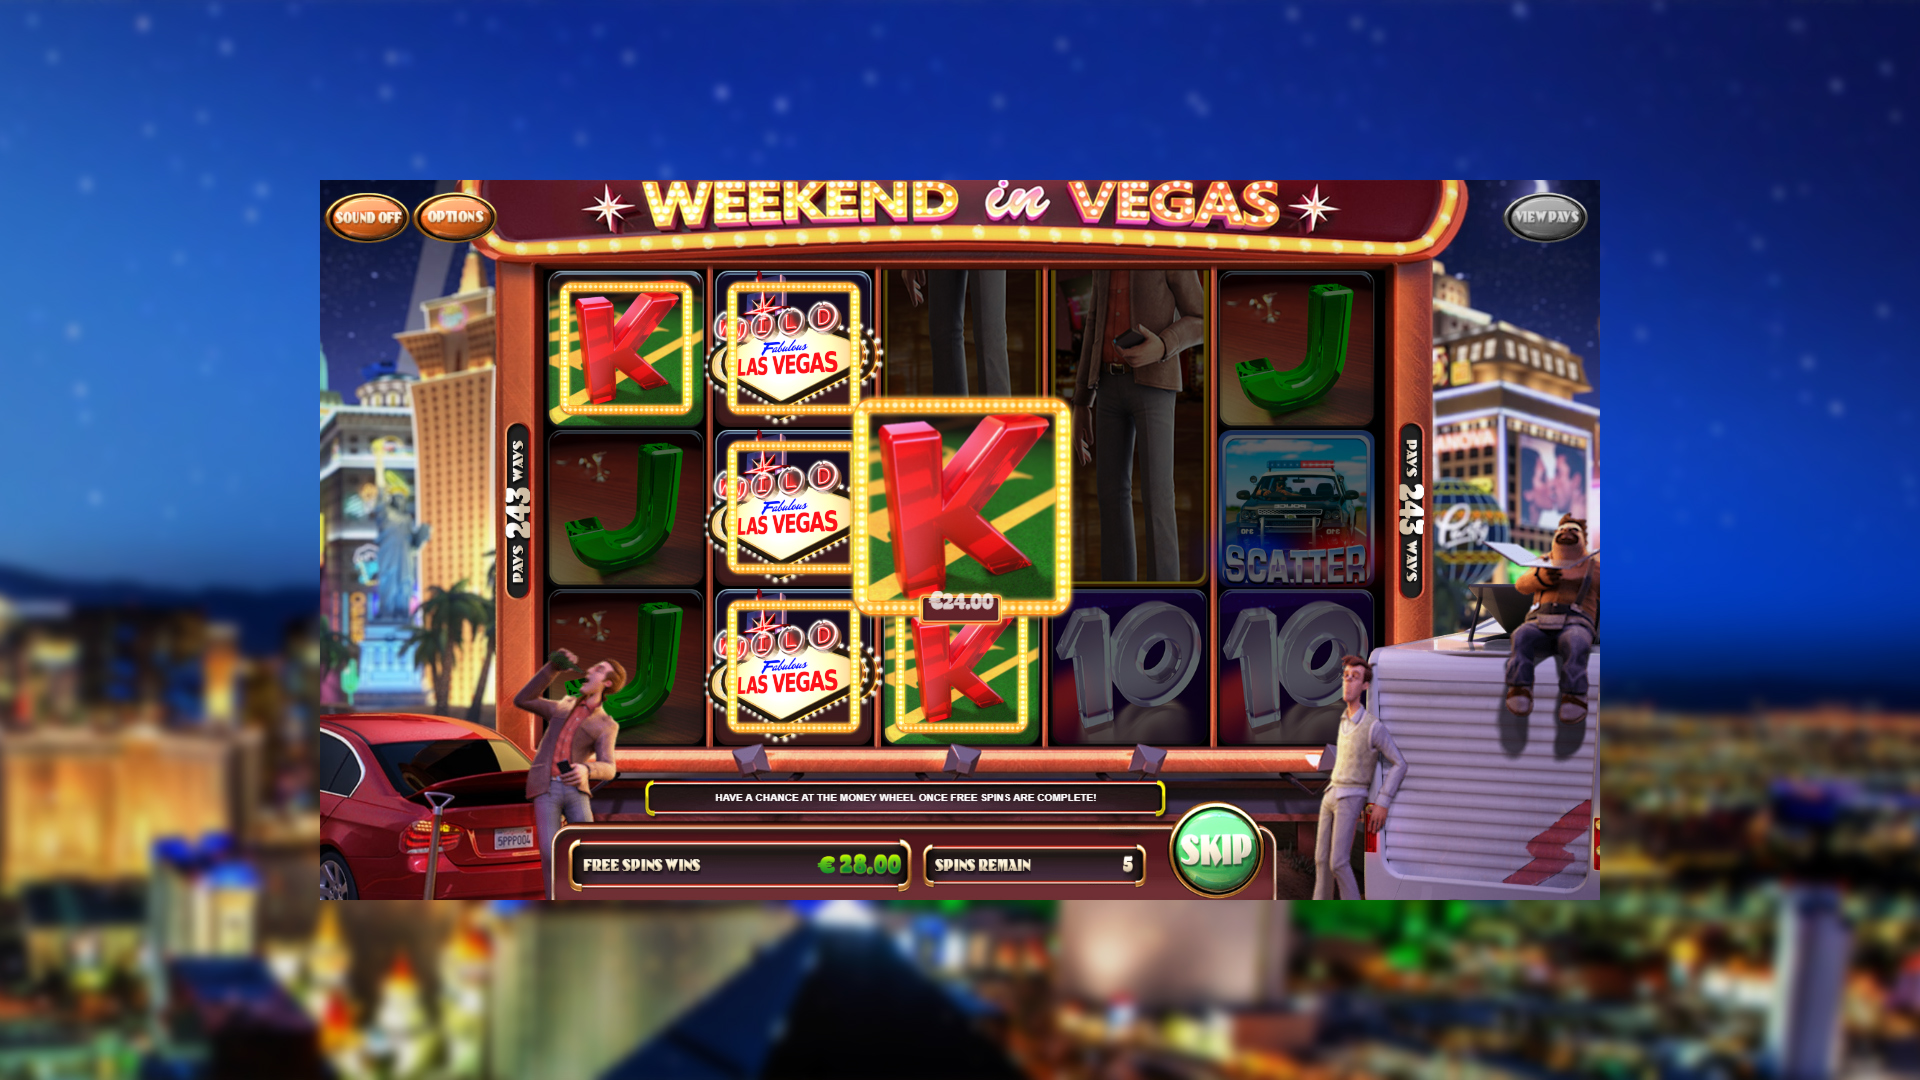 Weekend In Vegas - Free Spins